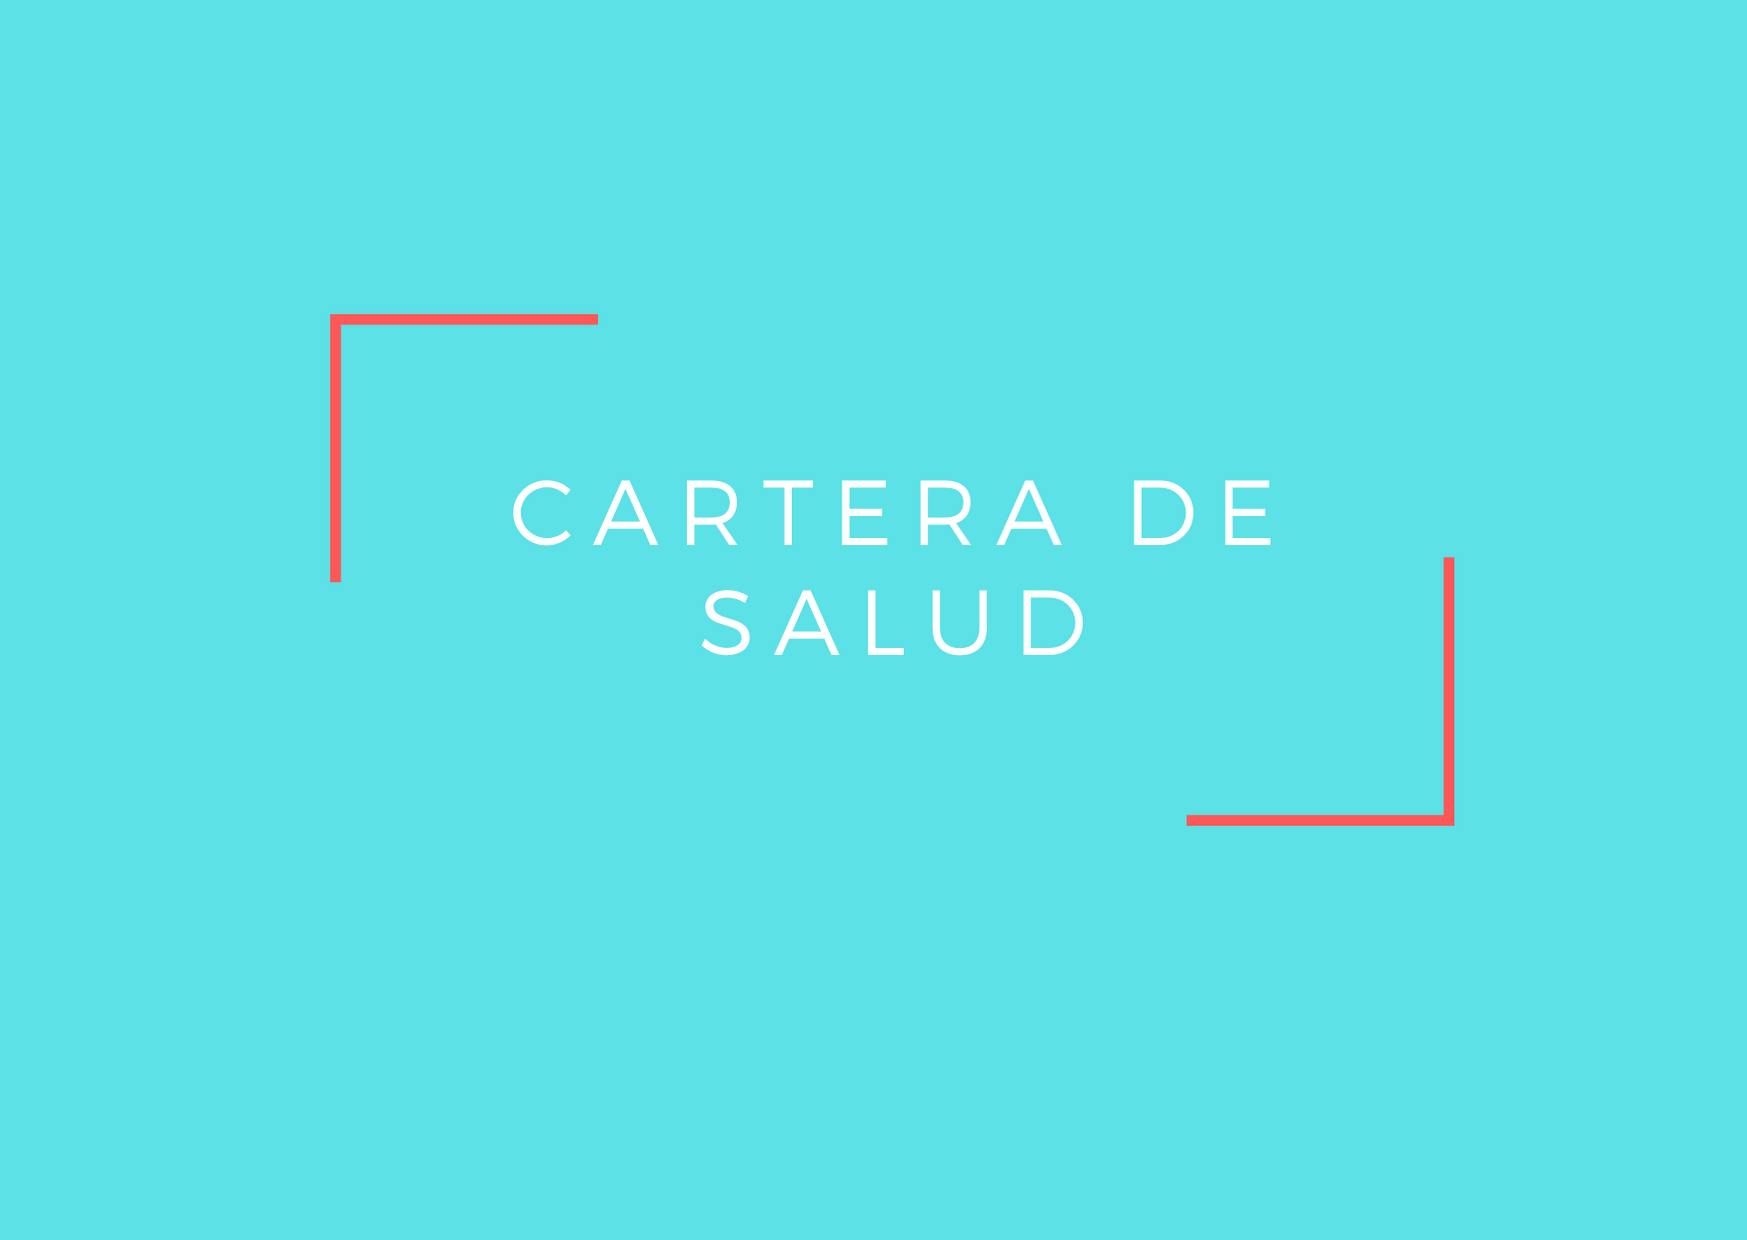 CARTERA DE SALUD